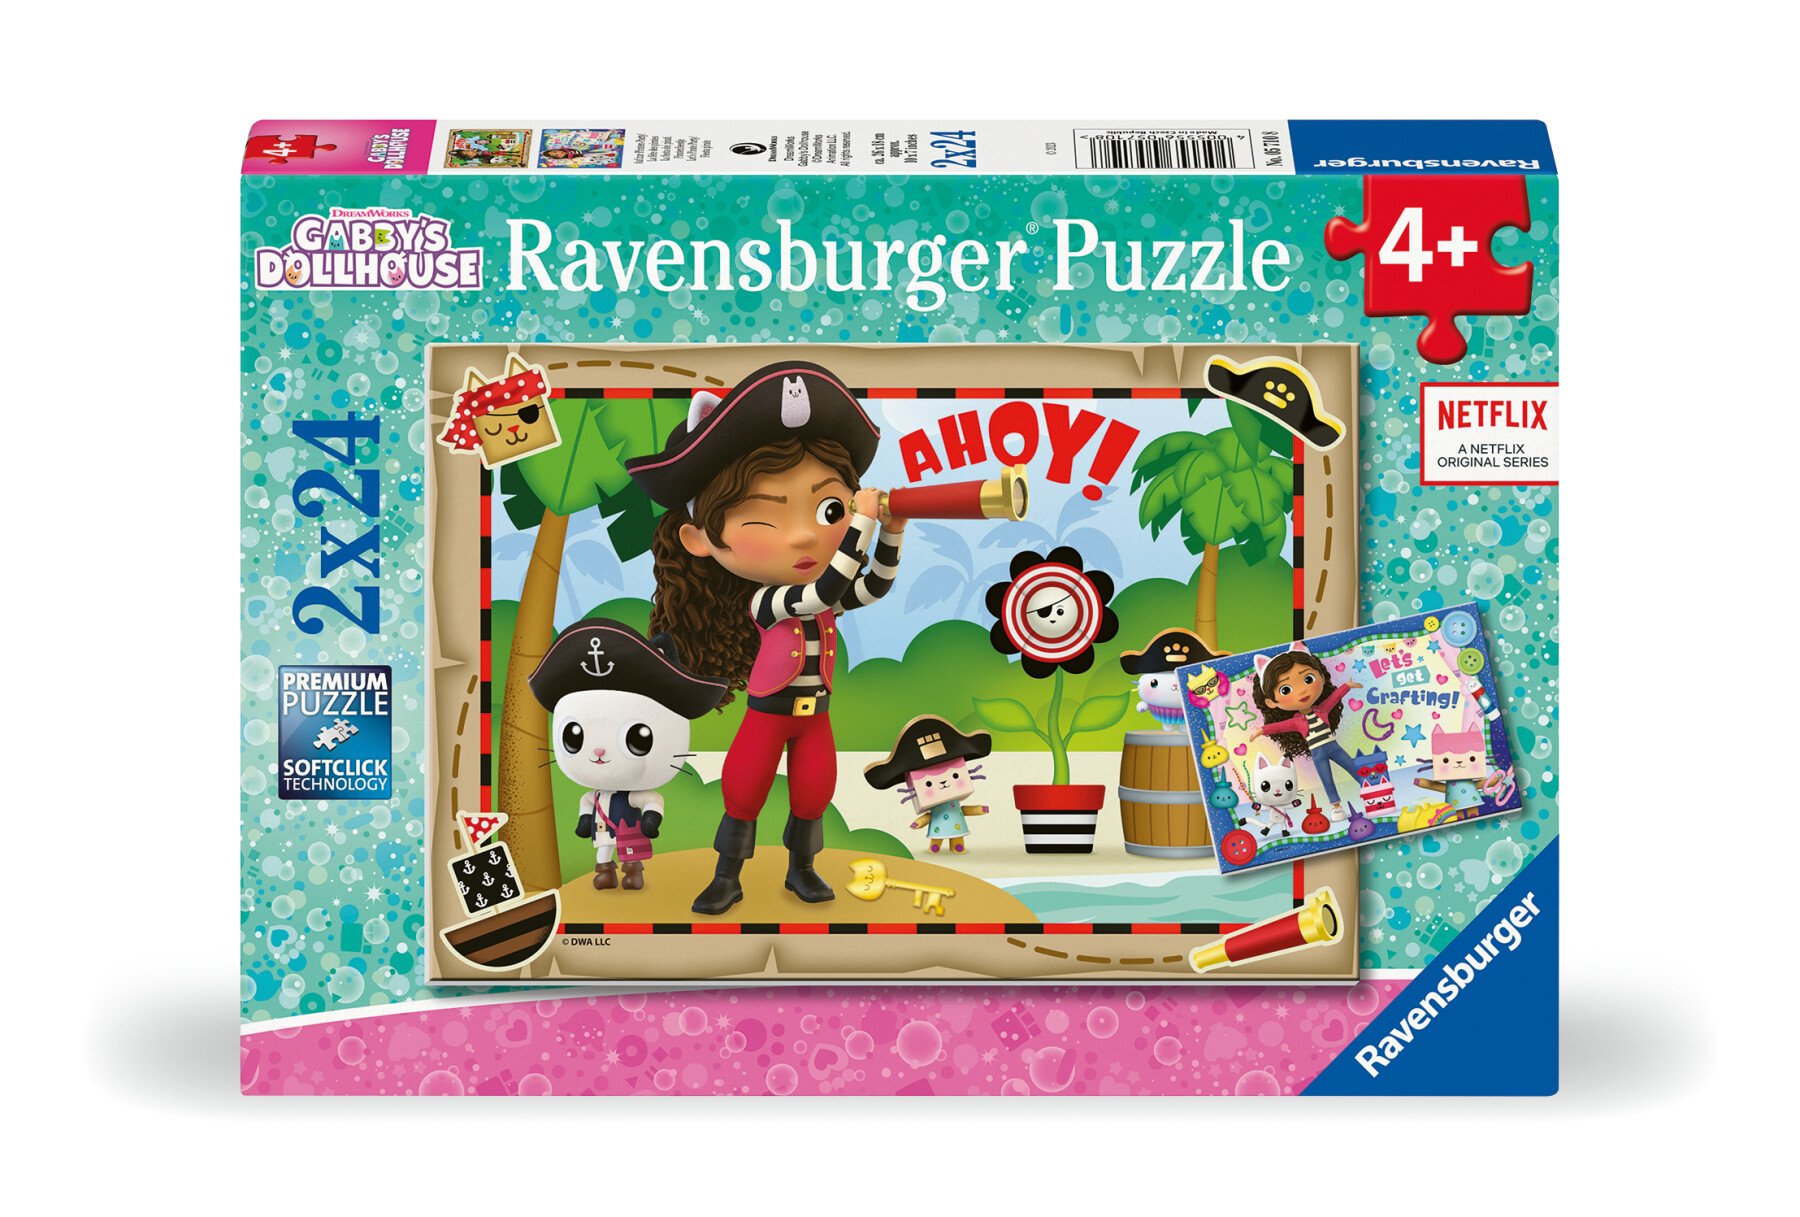 Ravensburger - puzzle gabby's dollhouse, collezione 2x24, 2 puzzle da 24 pezzi, età raccomandata 4+ anni - GABBY'S DOLLHOUSE, RAVENSBURGER